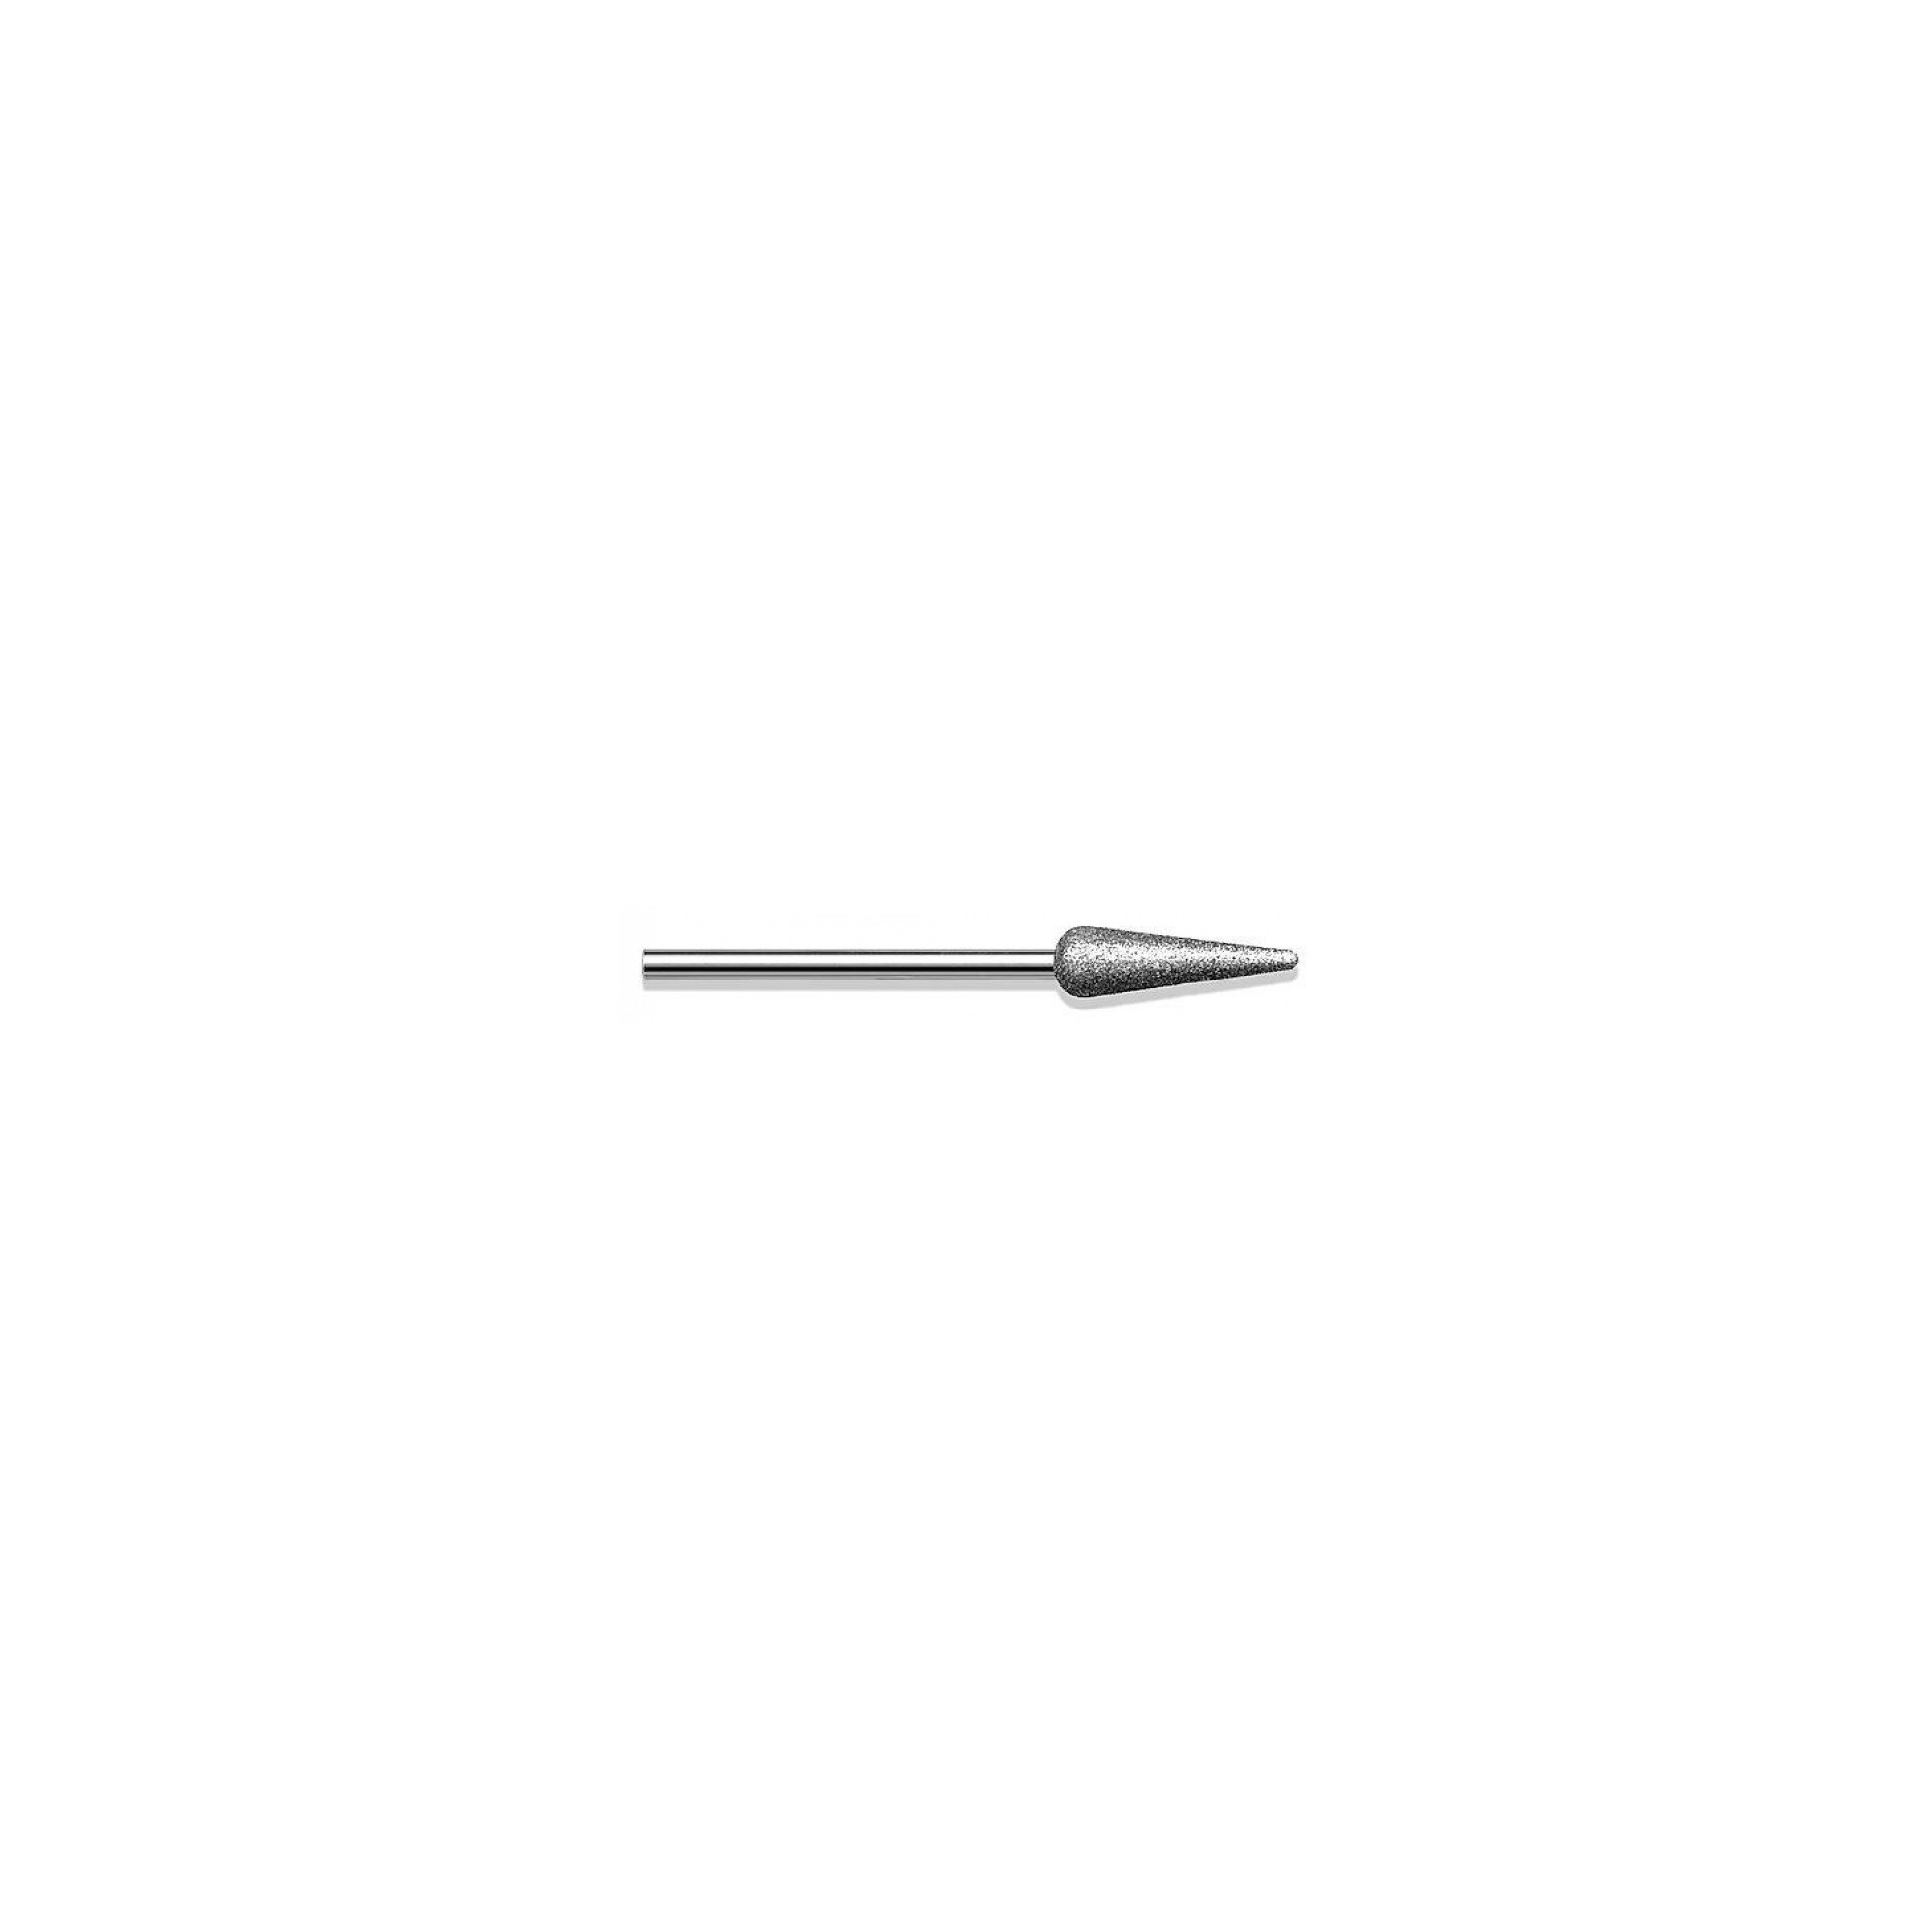 Fraise diamantée standard - Lissage des ongles et des callosités - Grain moyen - ø6mm